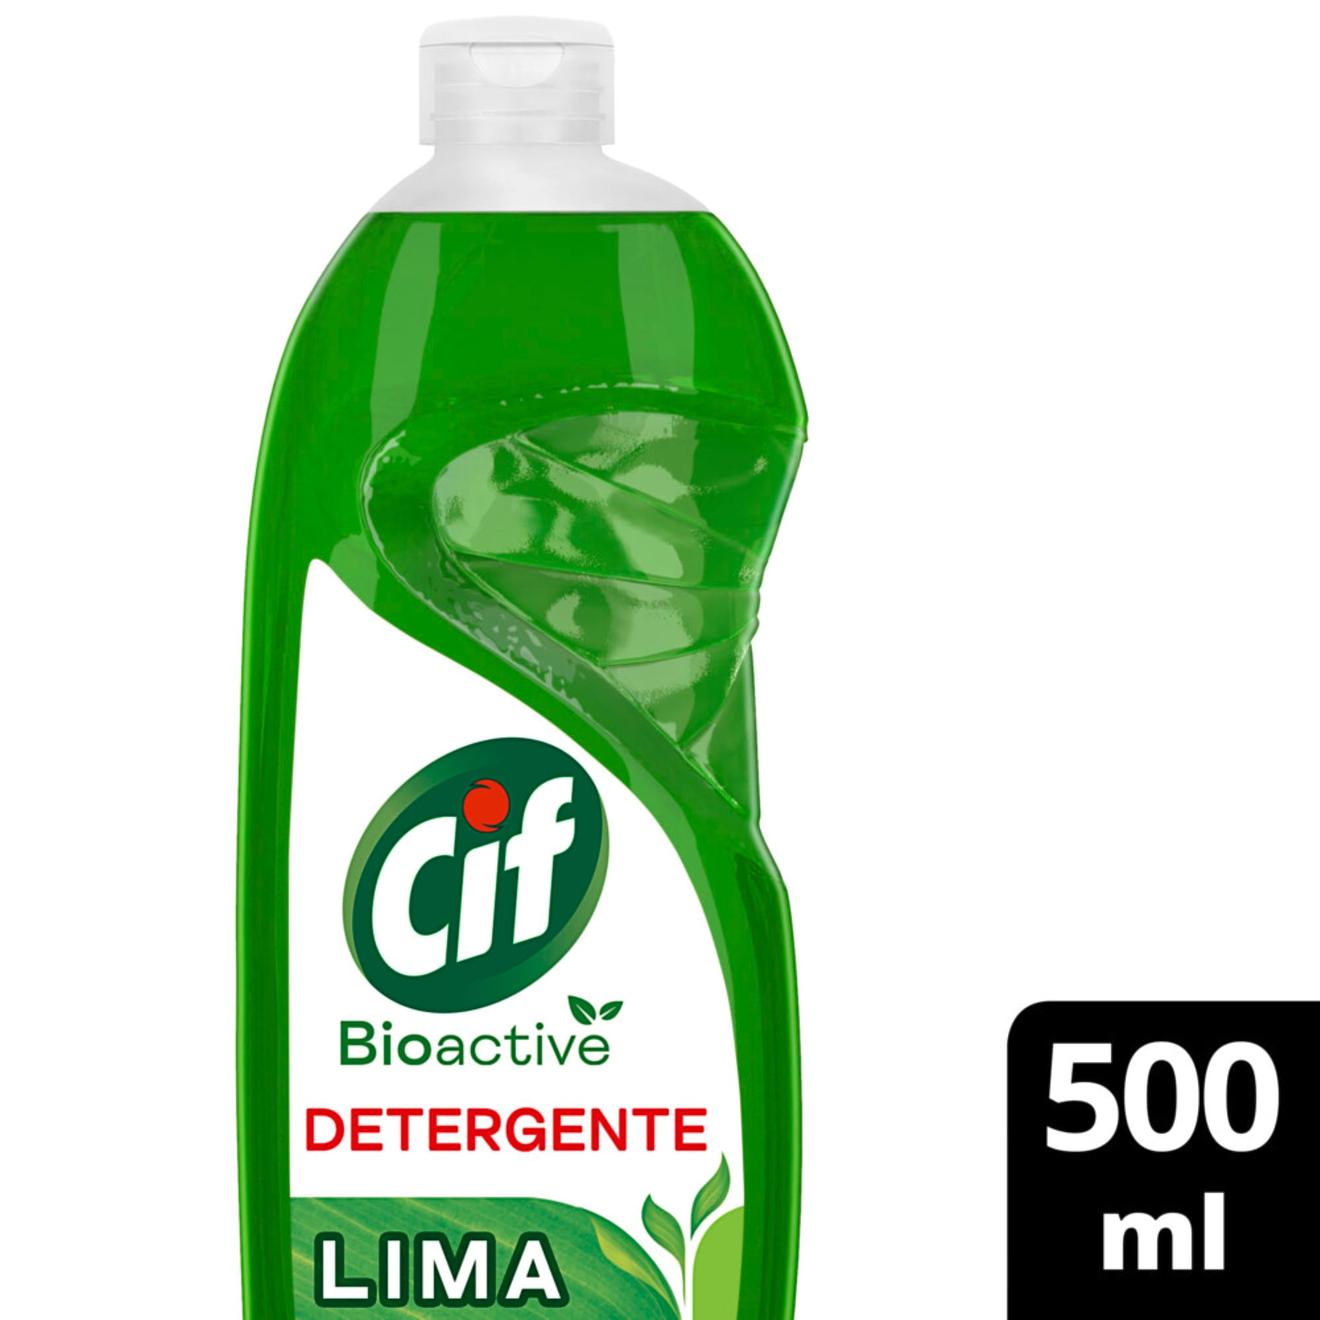 Oferta de Detergente Cif bioactive lima 500 cc. por $1221,75 en Carrefour